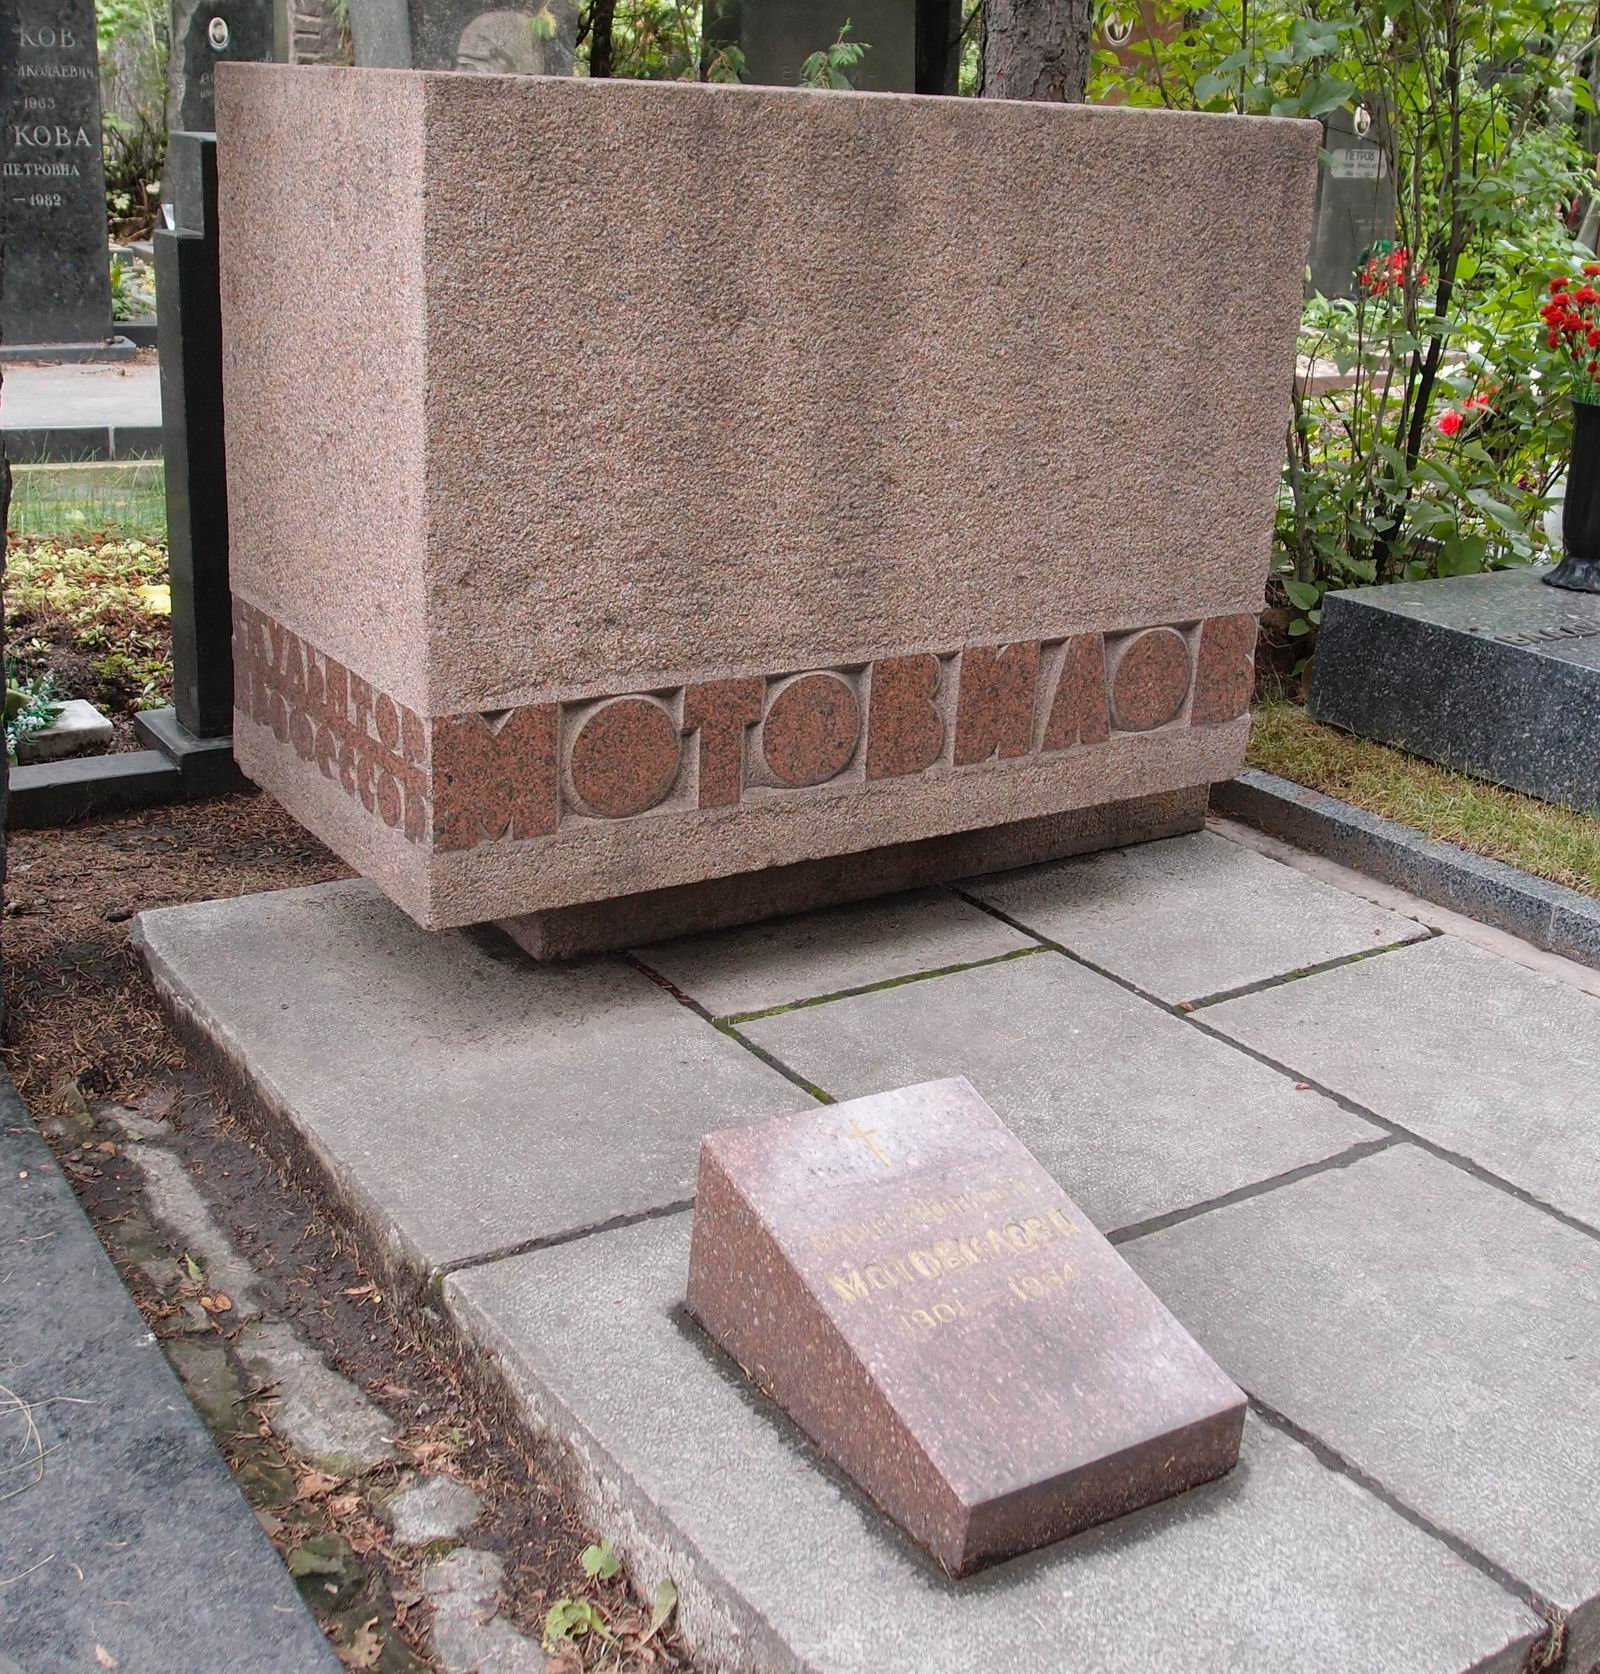 Памятник на могиле Мотовилова Г.И. (1884-1963), ск. А.Емельянцев, арх. В.Калмыков, на Новодевичьем кладбище (8-30-8). Нажмите левую кнопку мыши чтобы увидеть другой ракурс памятника.